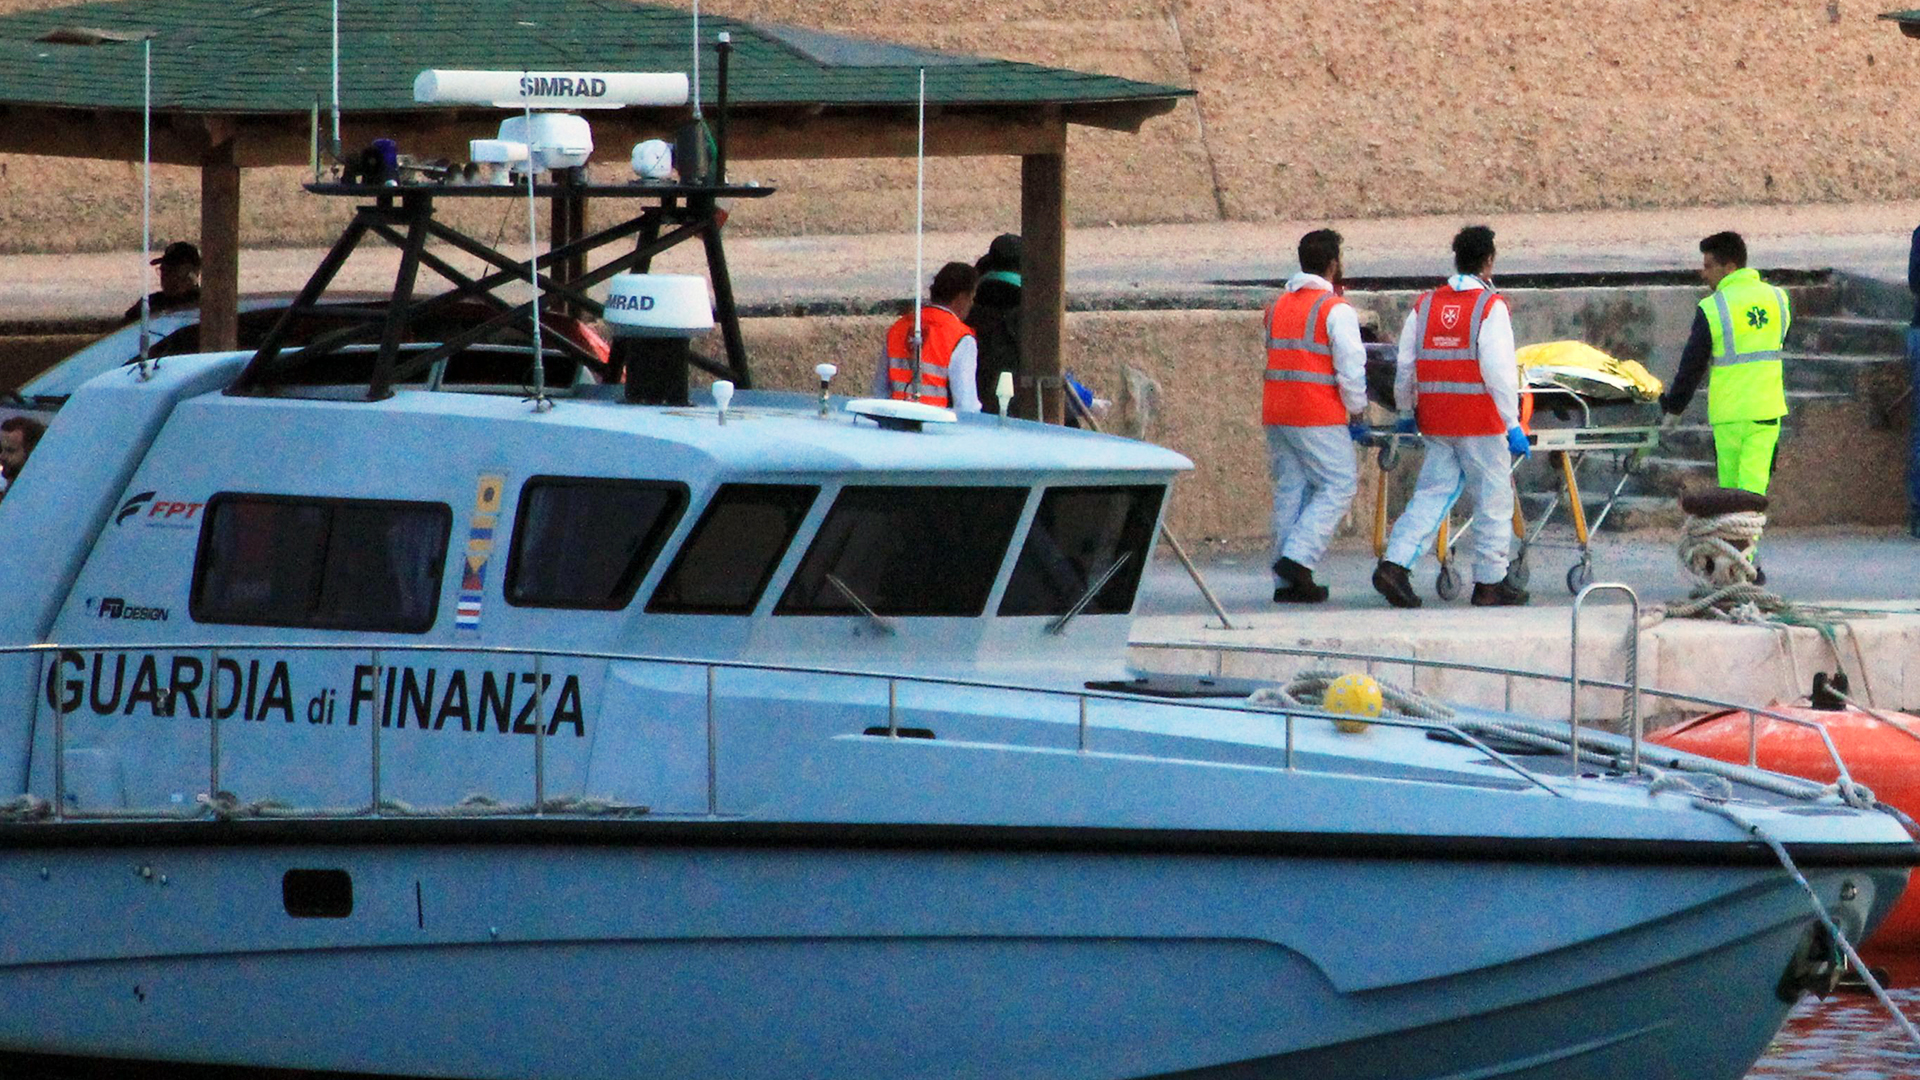 Eine Person wird von Sanitätern vom Boot der italienischen Finanzbehörde gebracht | Giuseppe Milana/EPA-EFE/REX